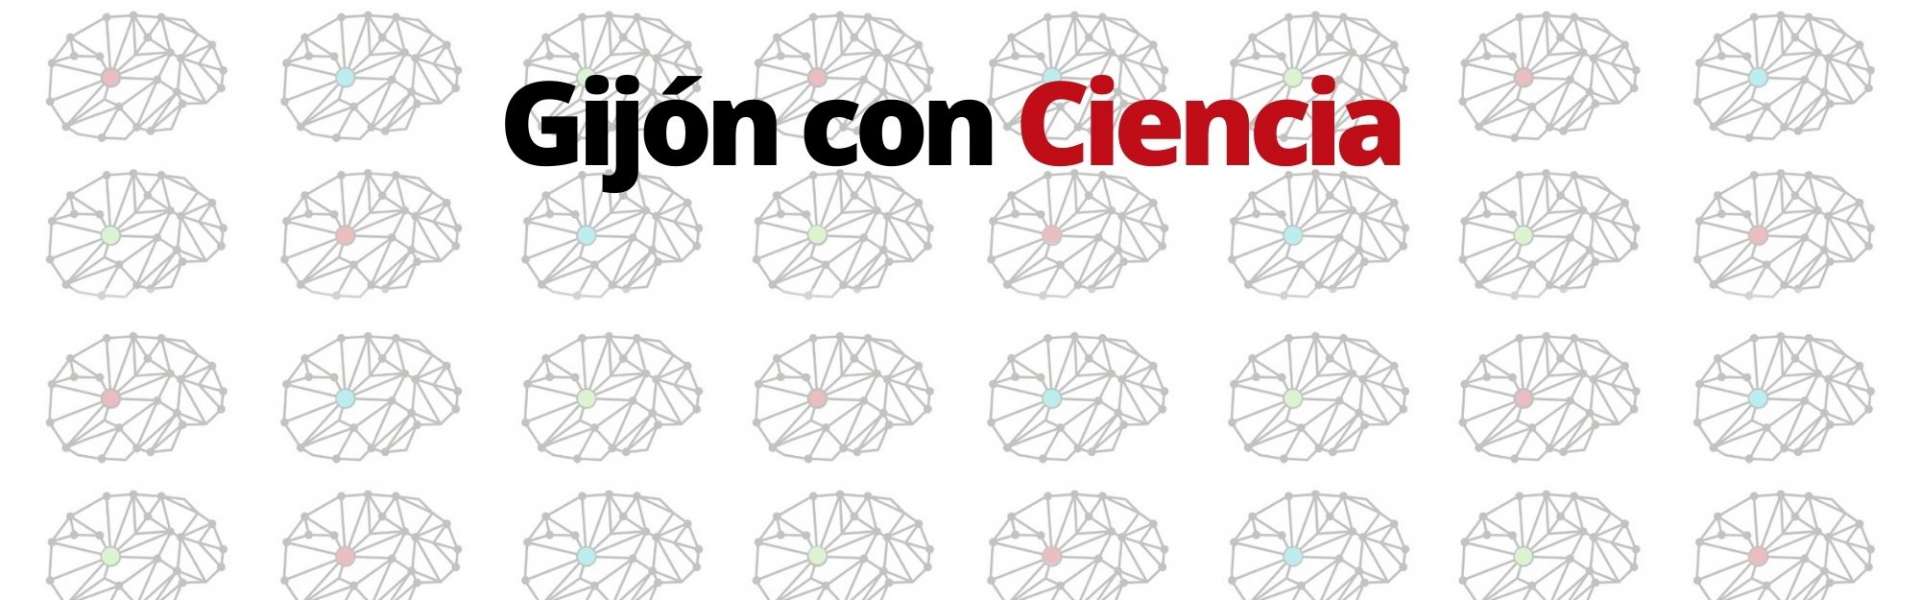 Gijón con Ciencia logo